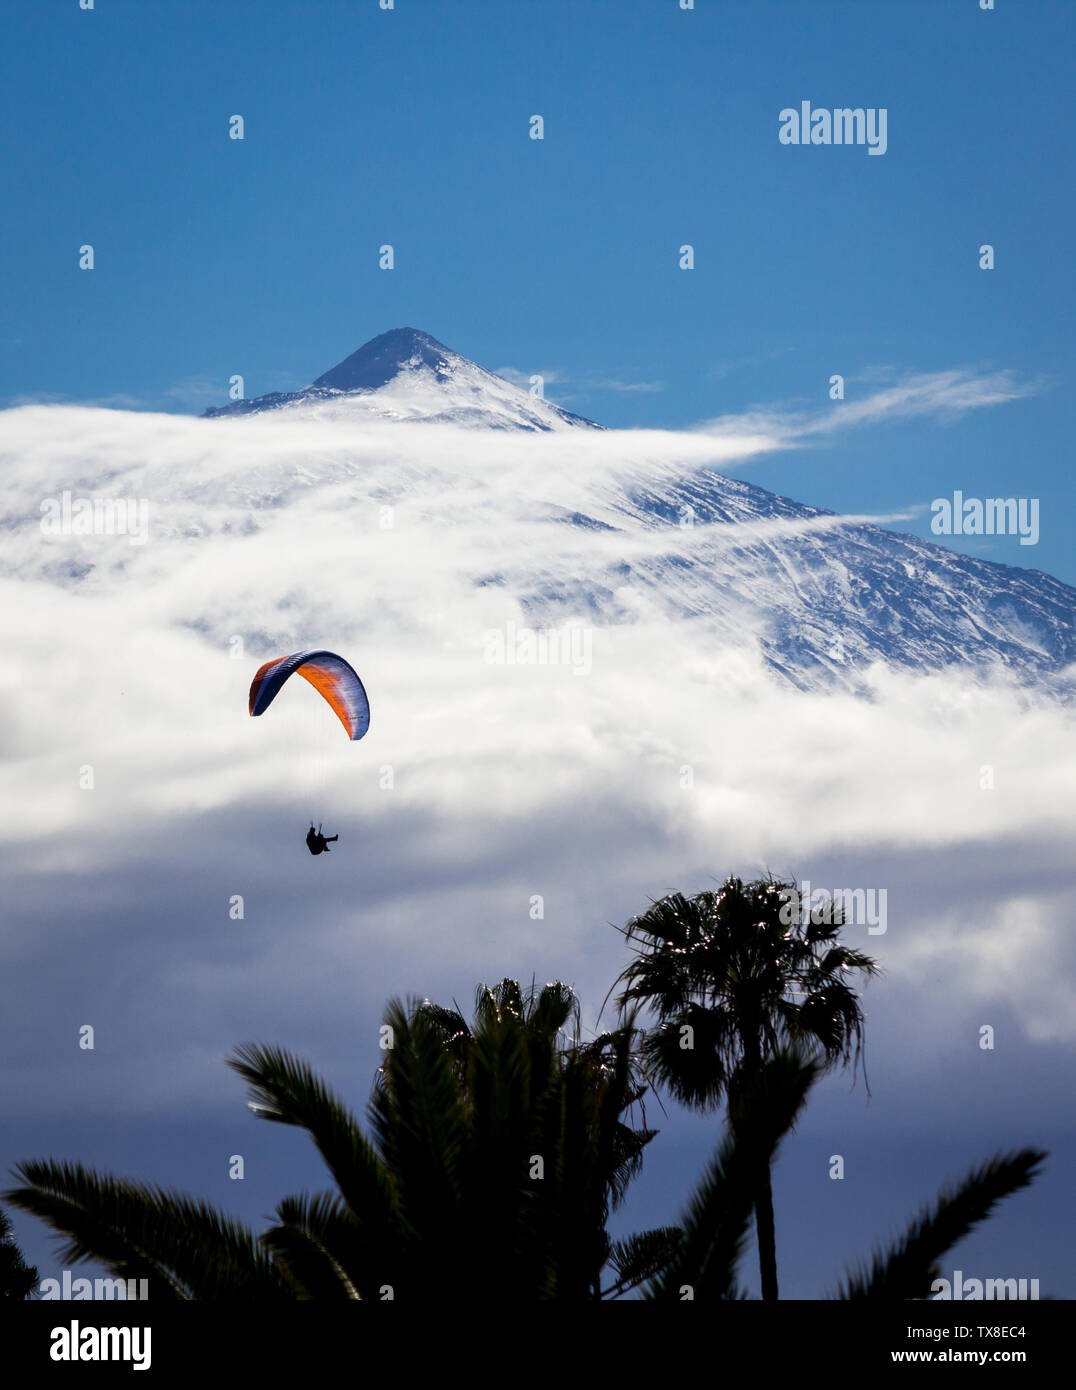 Gleitschirm fliegen hoch in den Wolken mit einem großen Berg im Hintergrund und Palmen im Vordergrund. Stockfoto